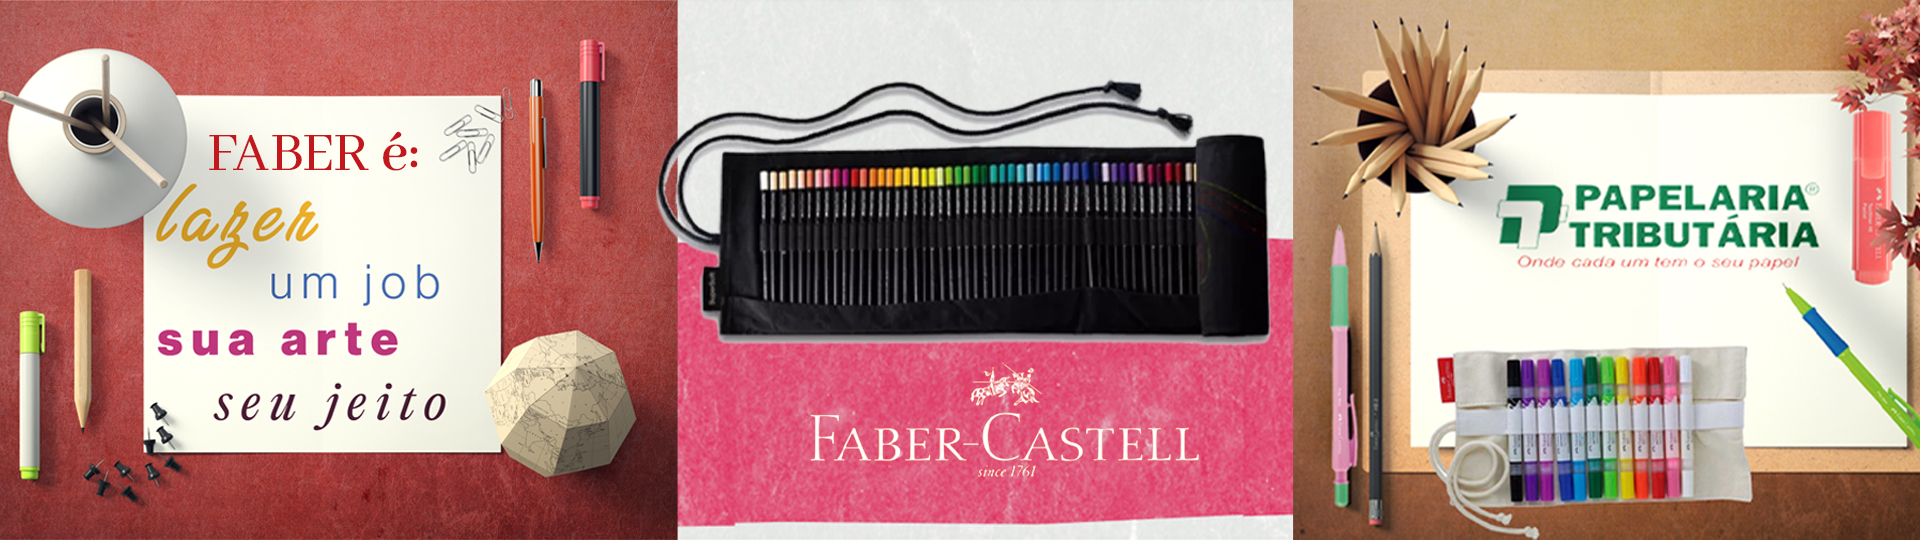 Bannner Faber Castell